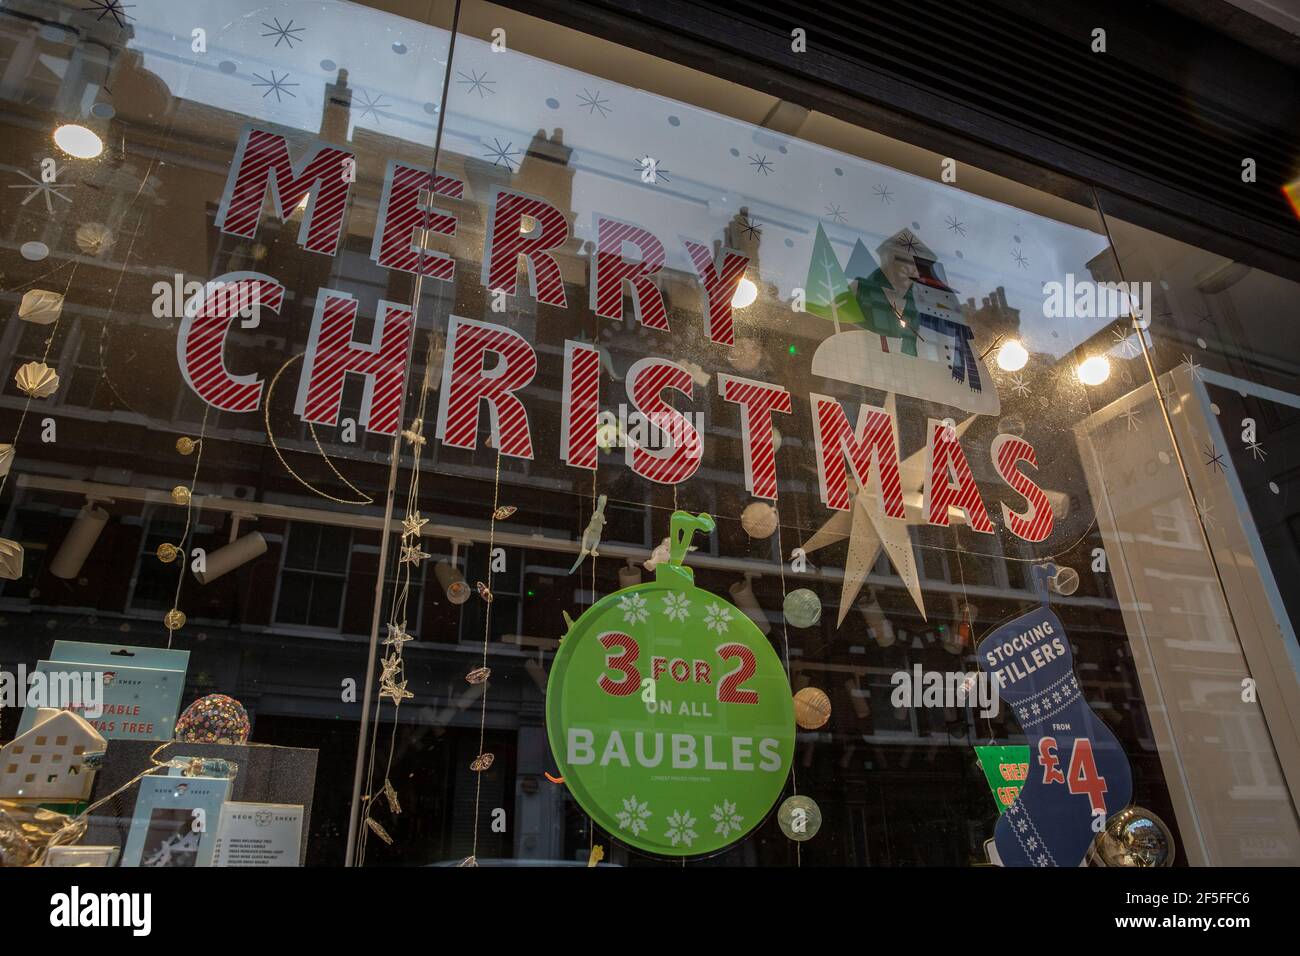 Geschäfte haben weiterhin Weihnachtsdekorationen an ihren Schaufenstern, nachdem Einzelhandelsgeschäfte gezwungen wurden, vor Weihnachten wegen Coronavirus-Sperre#3 zu schließen. Stockfoto